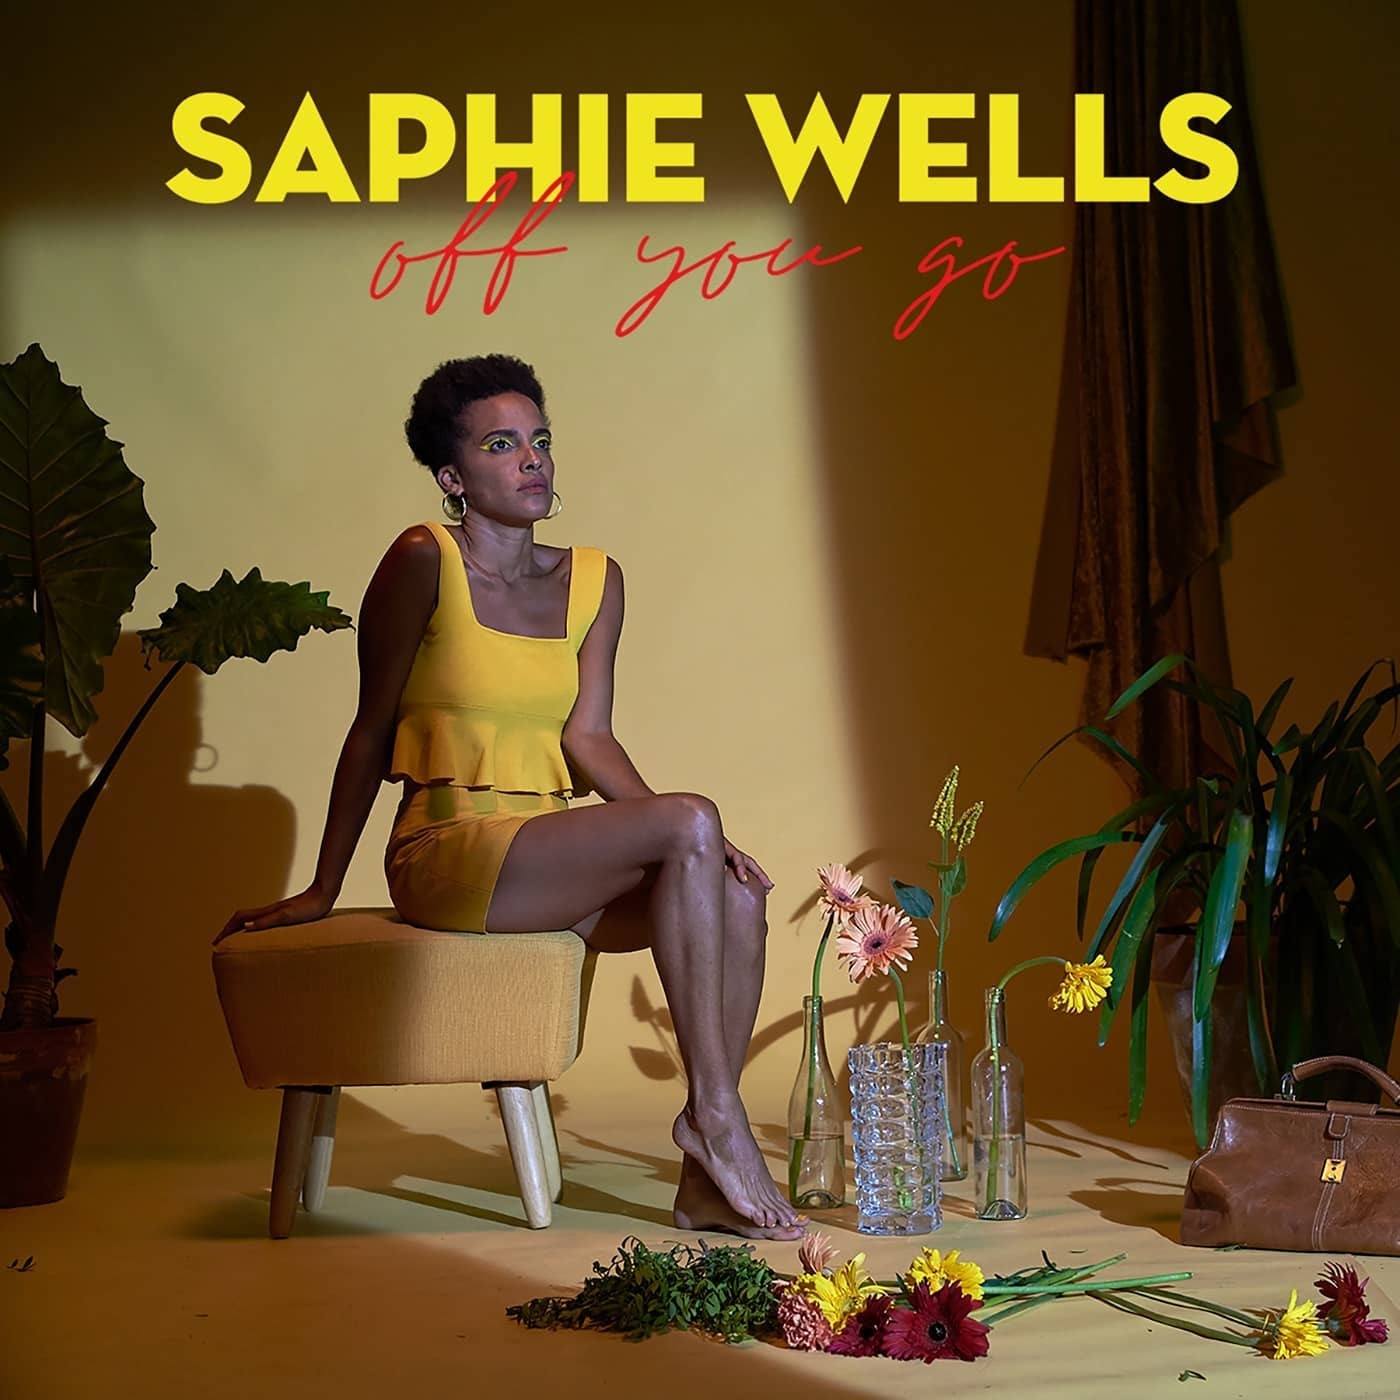 imagen 4 de Saphie Wells debuta en solitario con un single y vídeo adelanto de su EP.